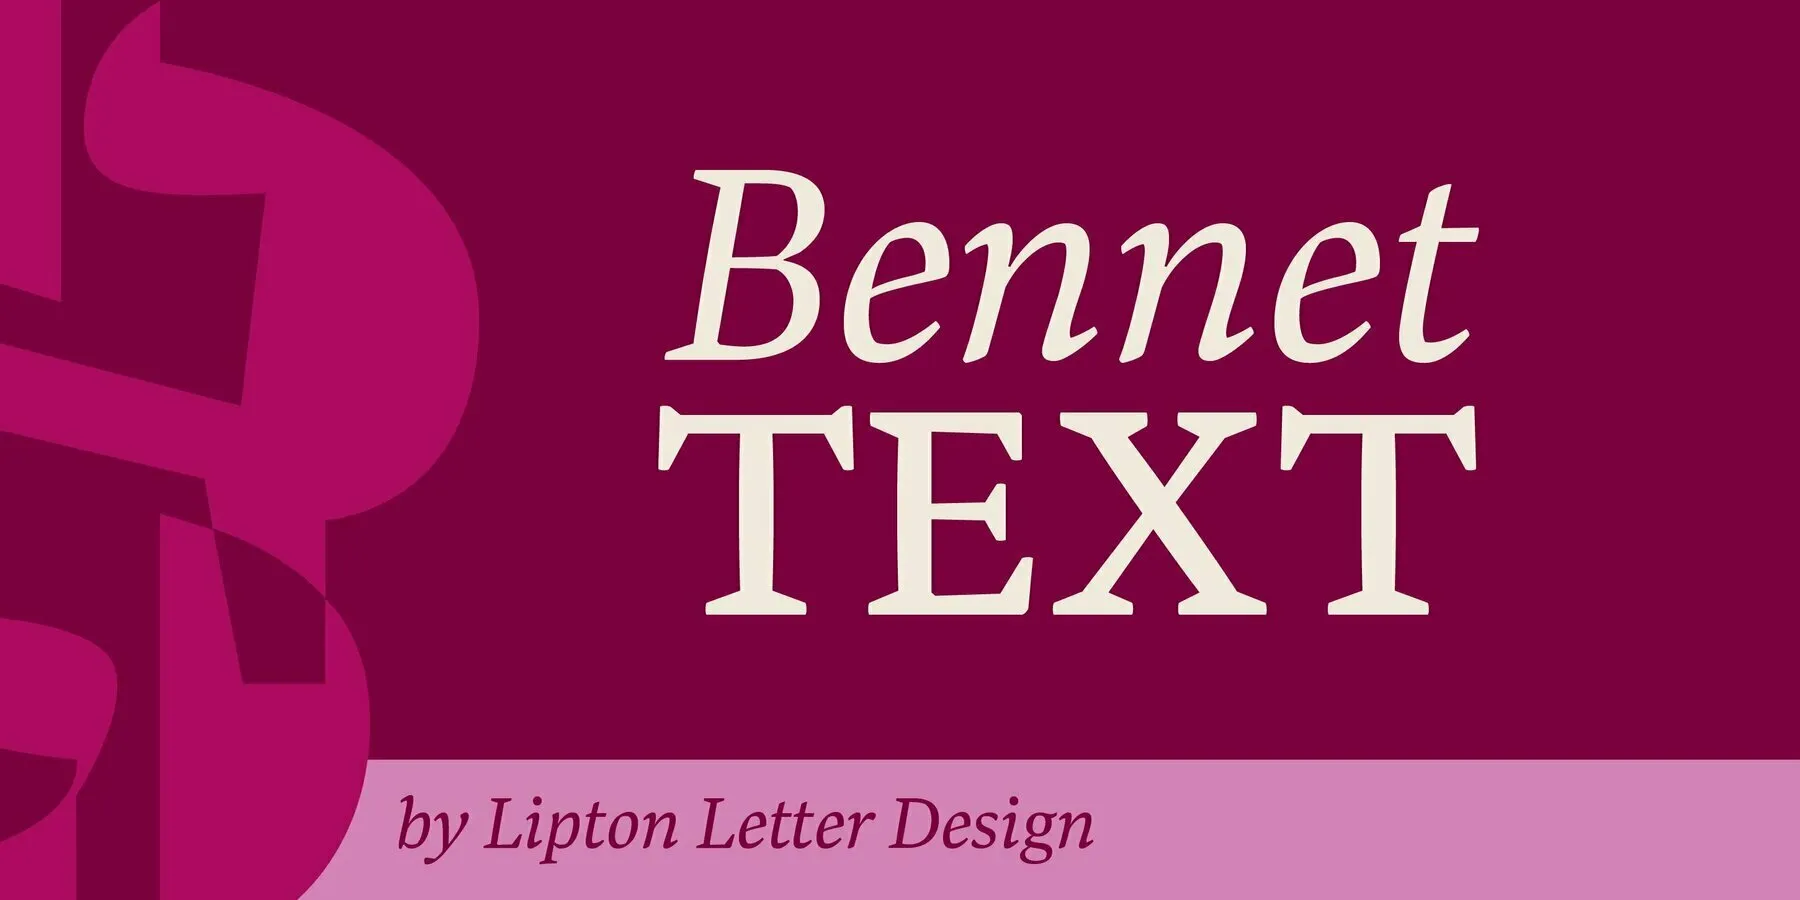 Bennet Text